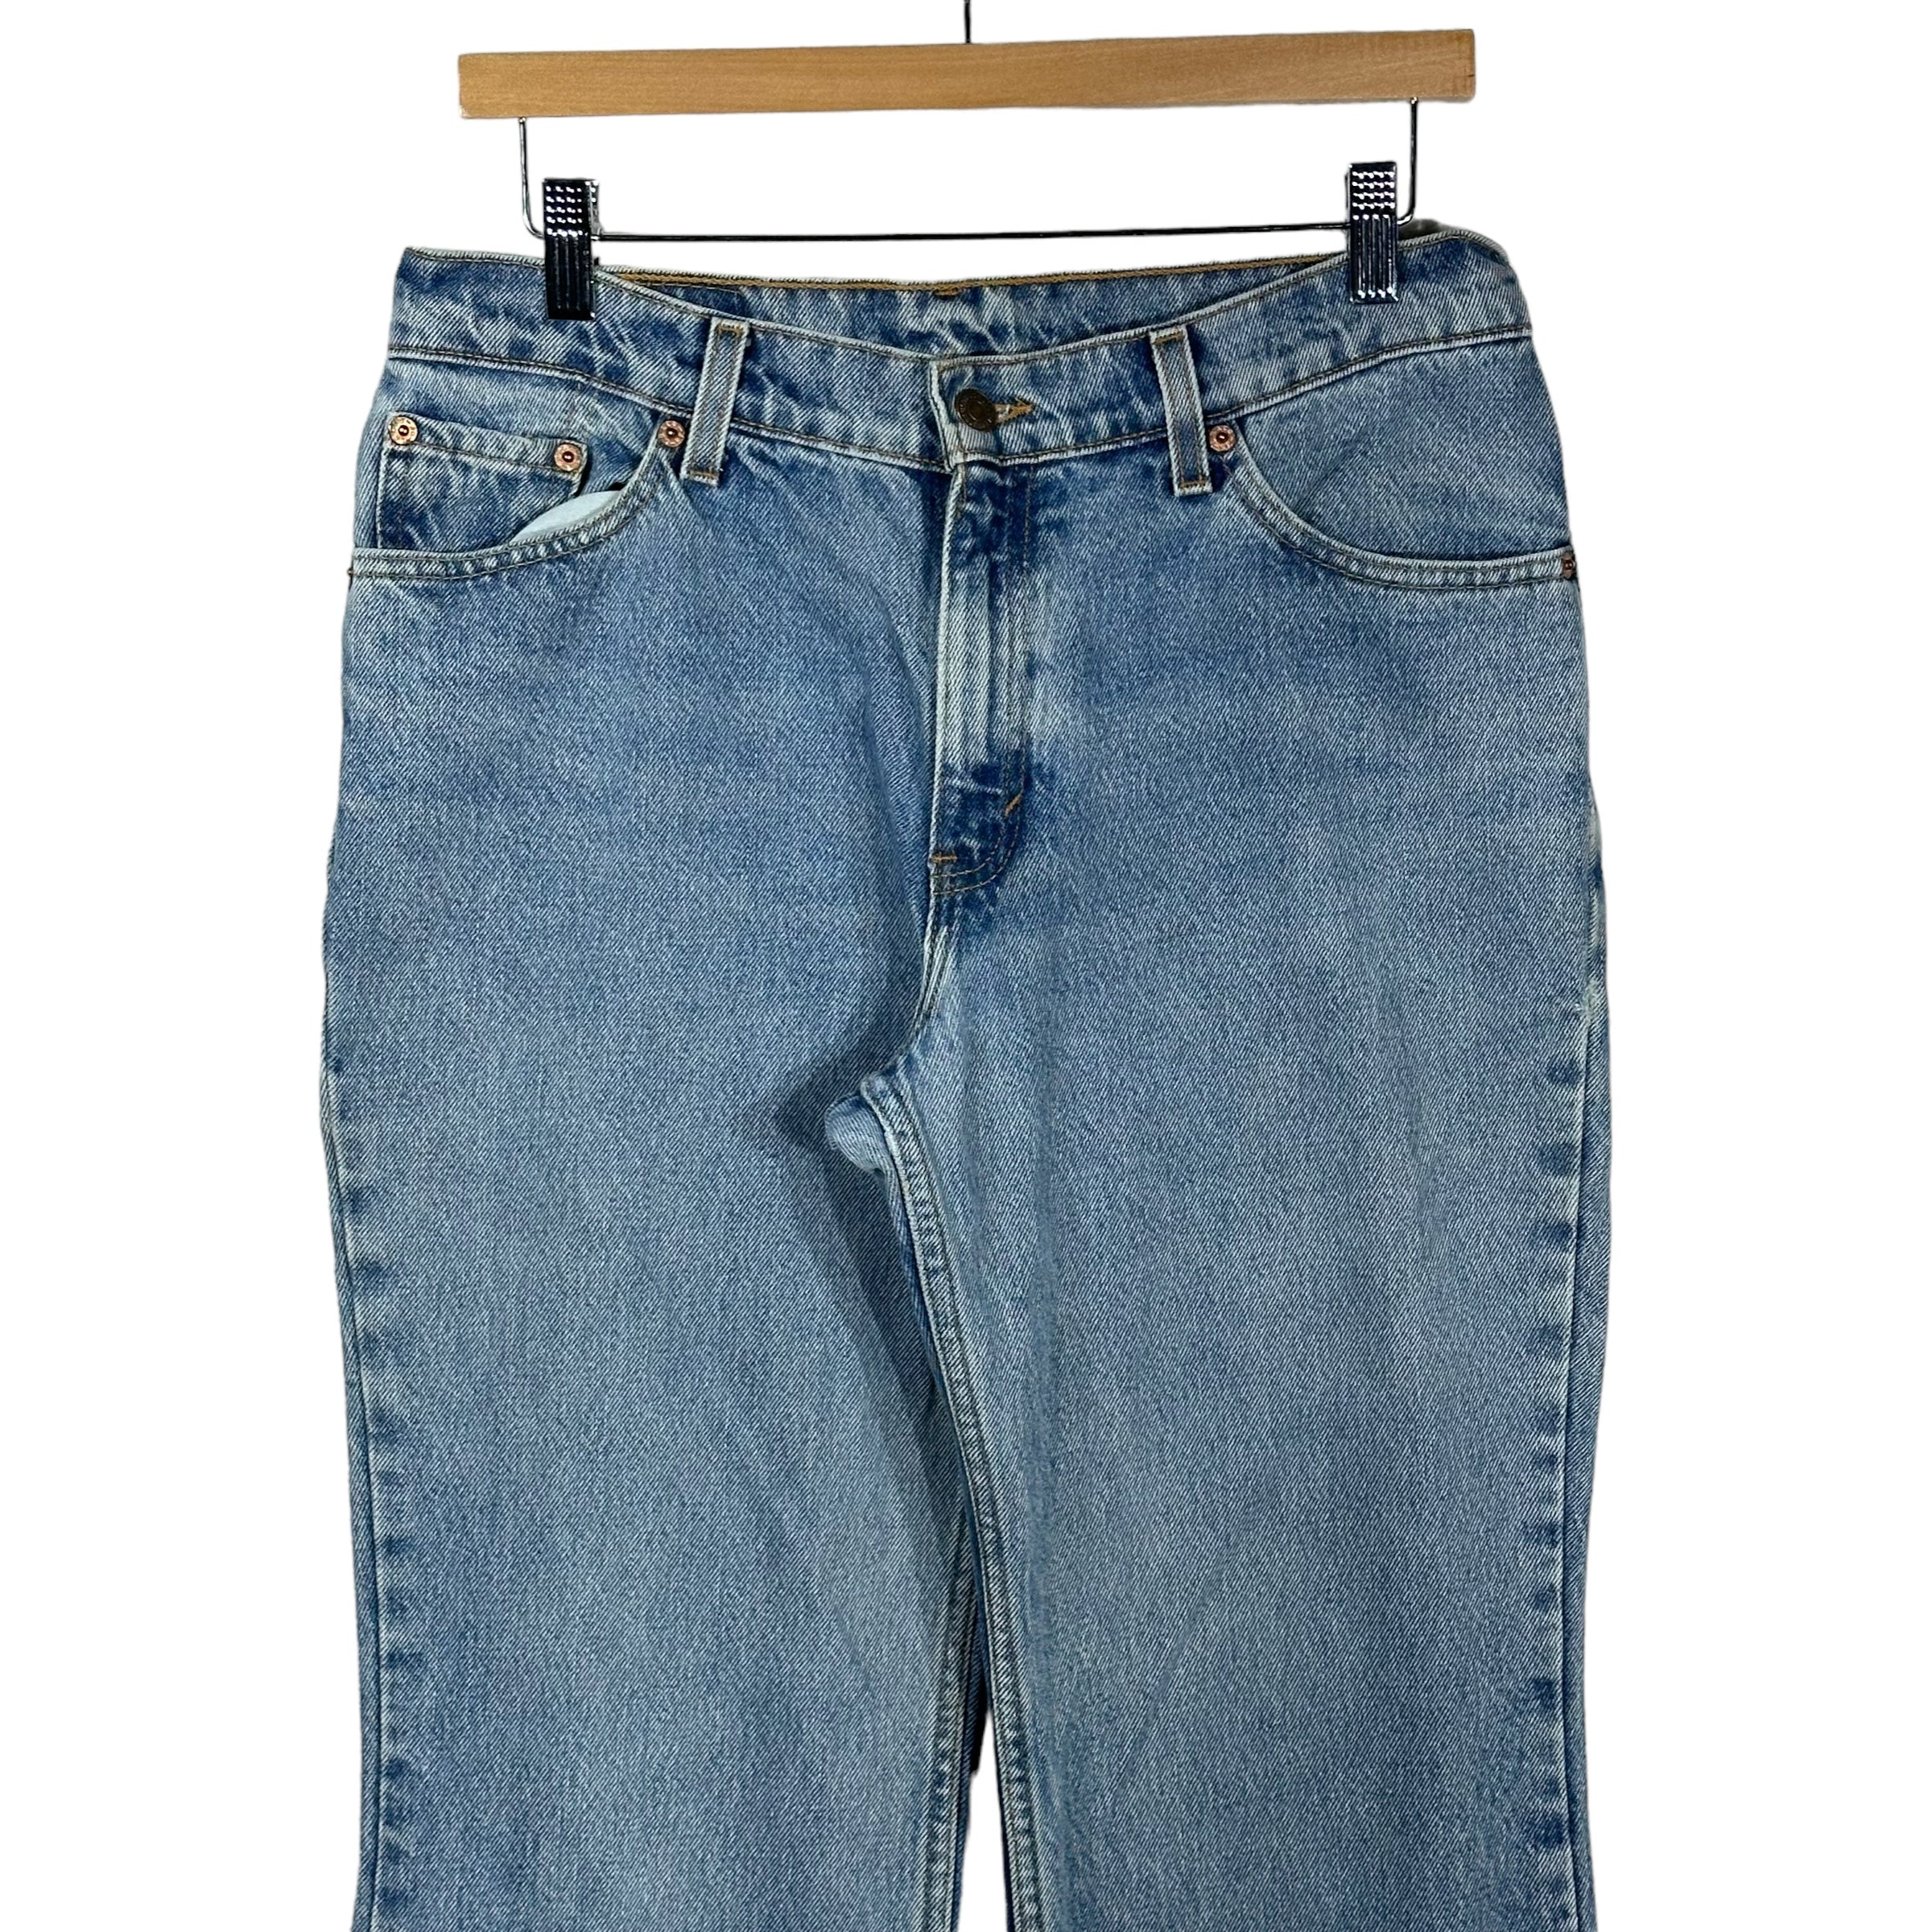 Vintage Levis 517 Denim Pants